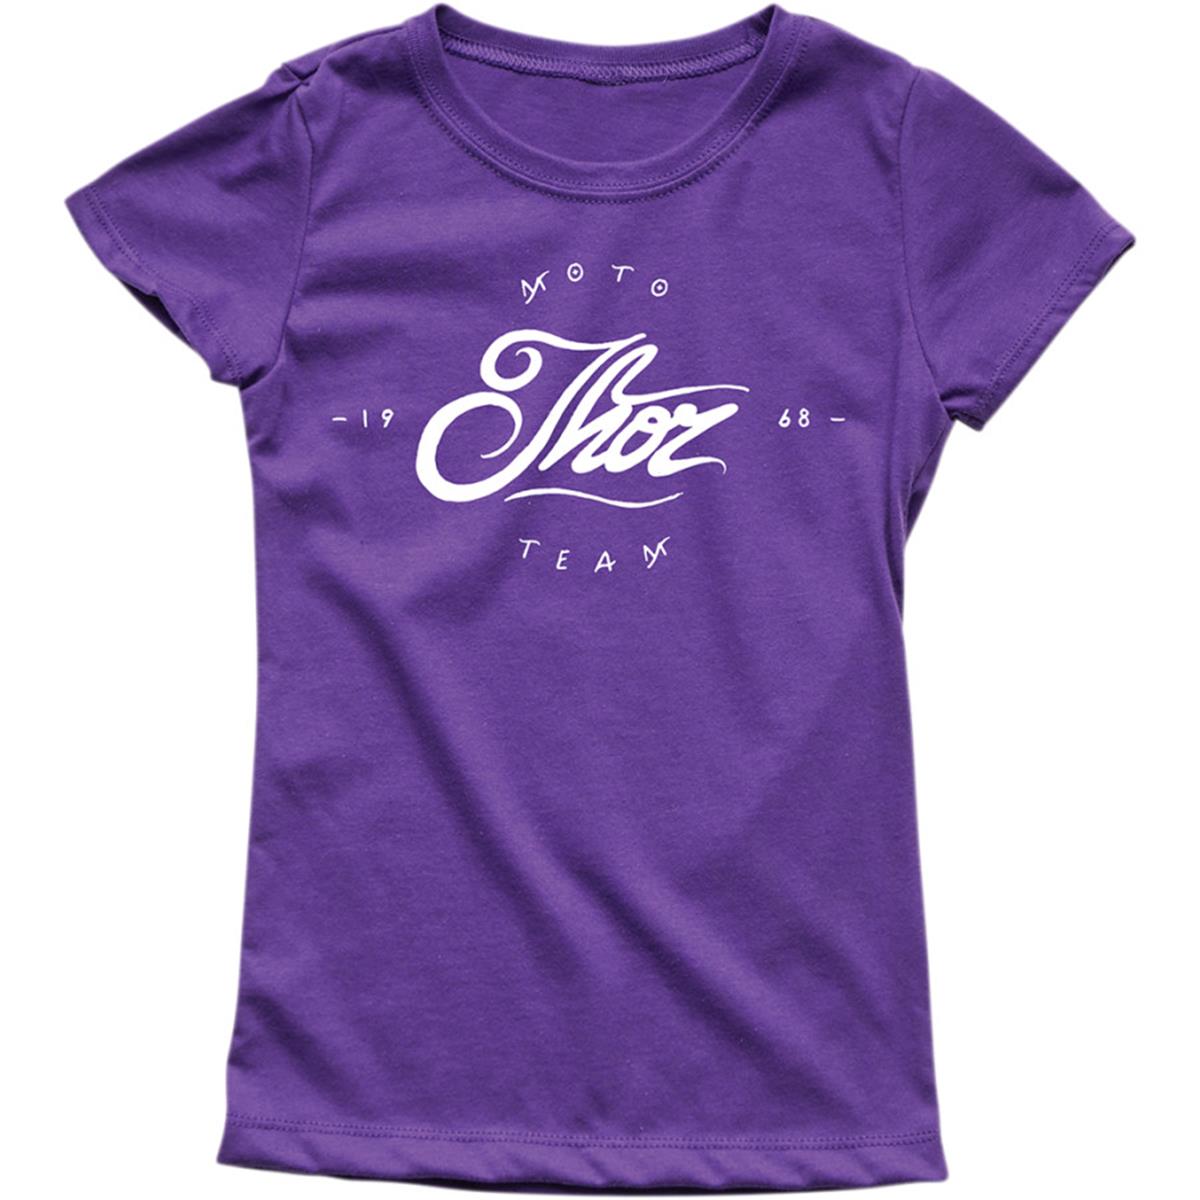 Thor Enfant Fille T-shirt Runner Purple